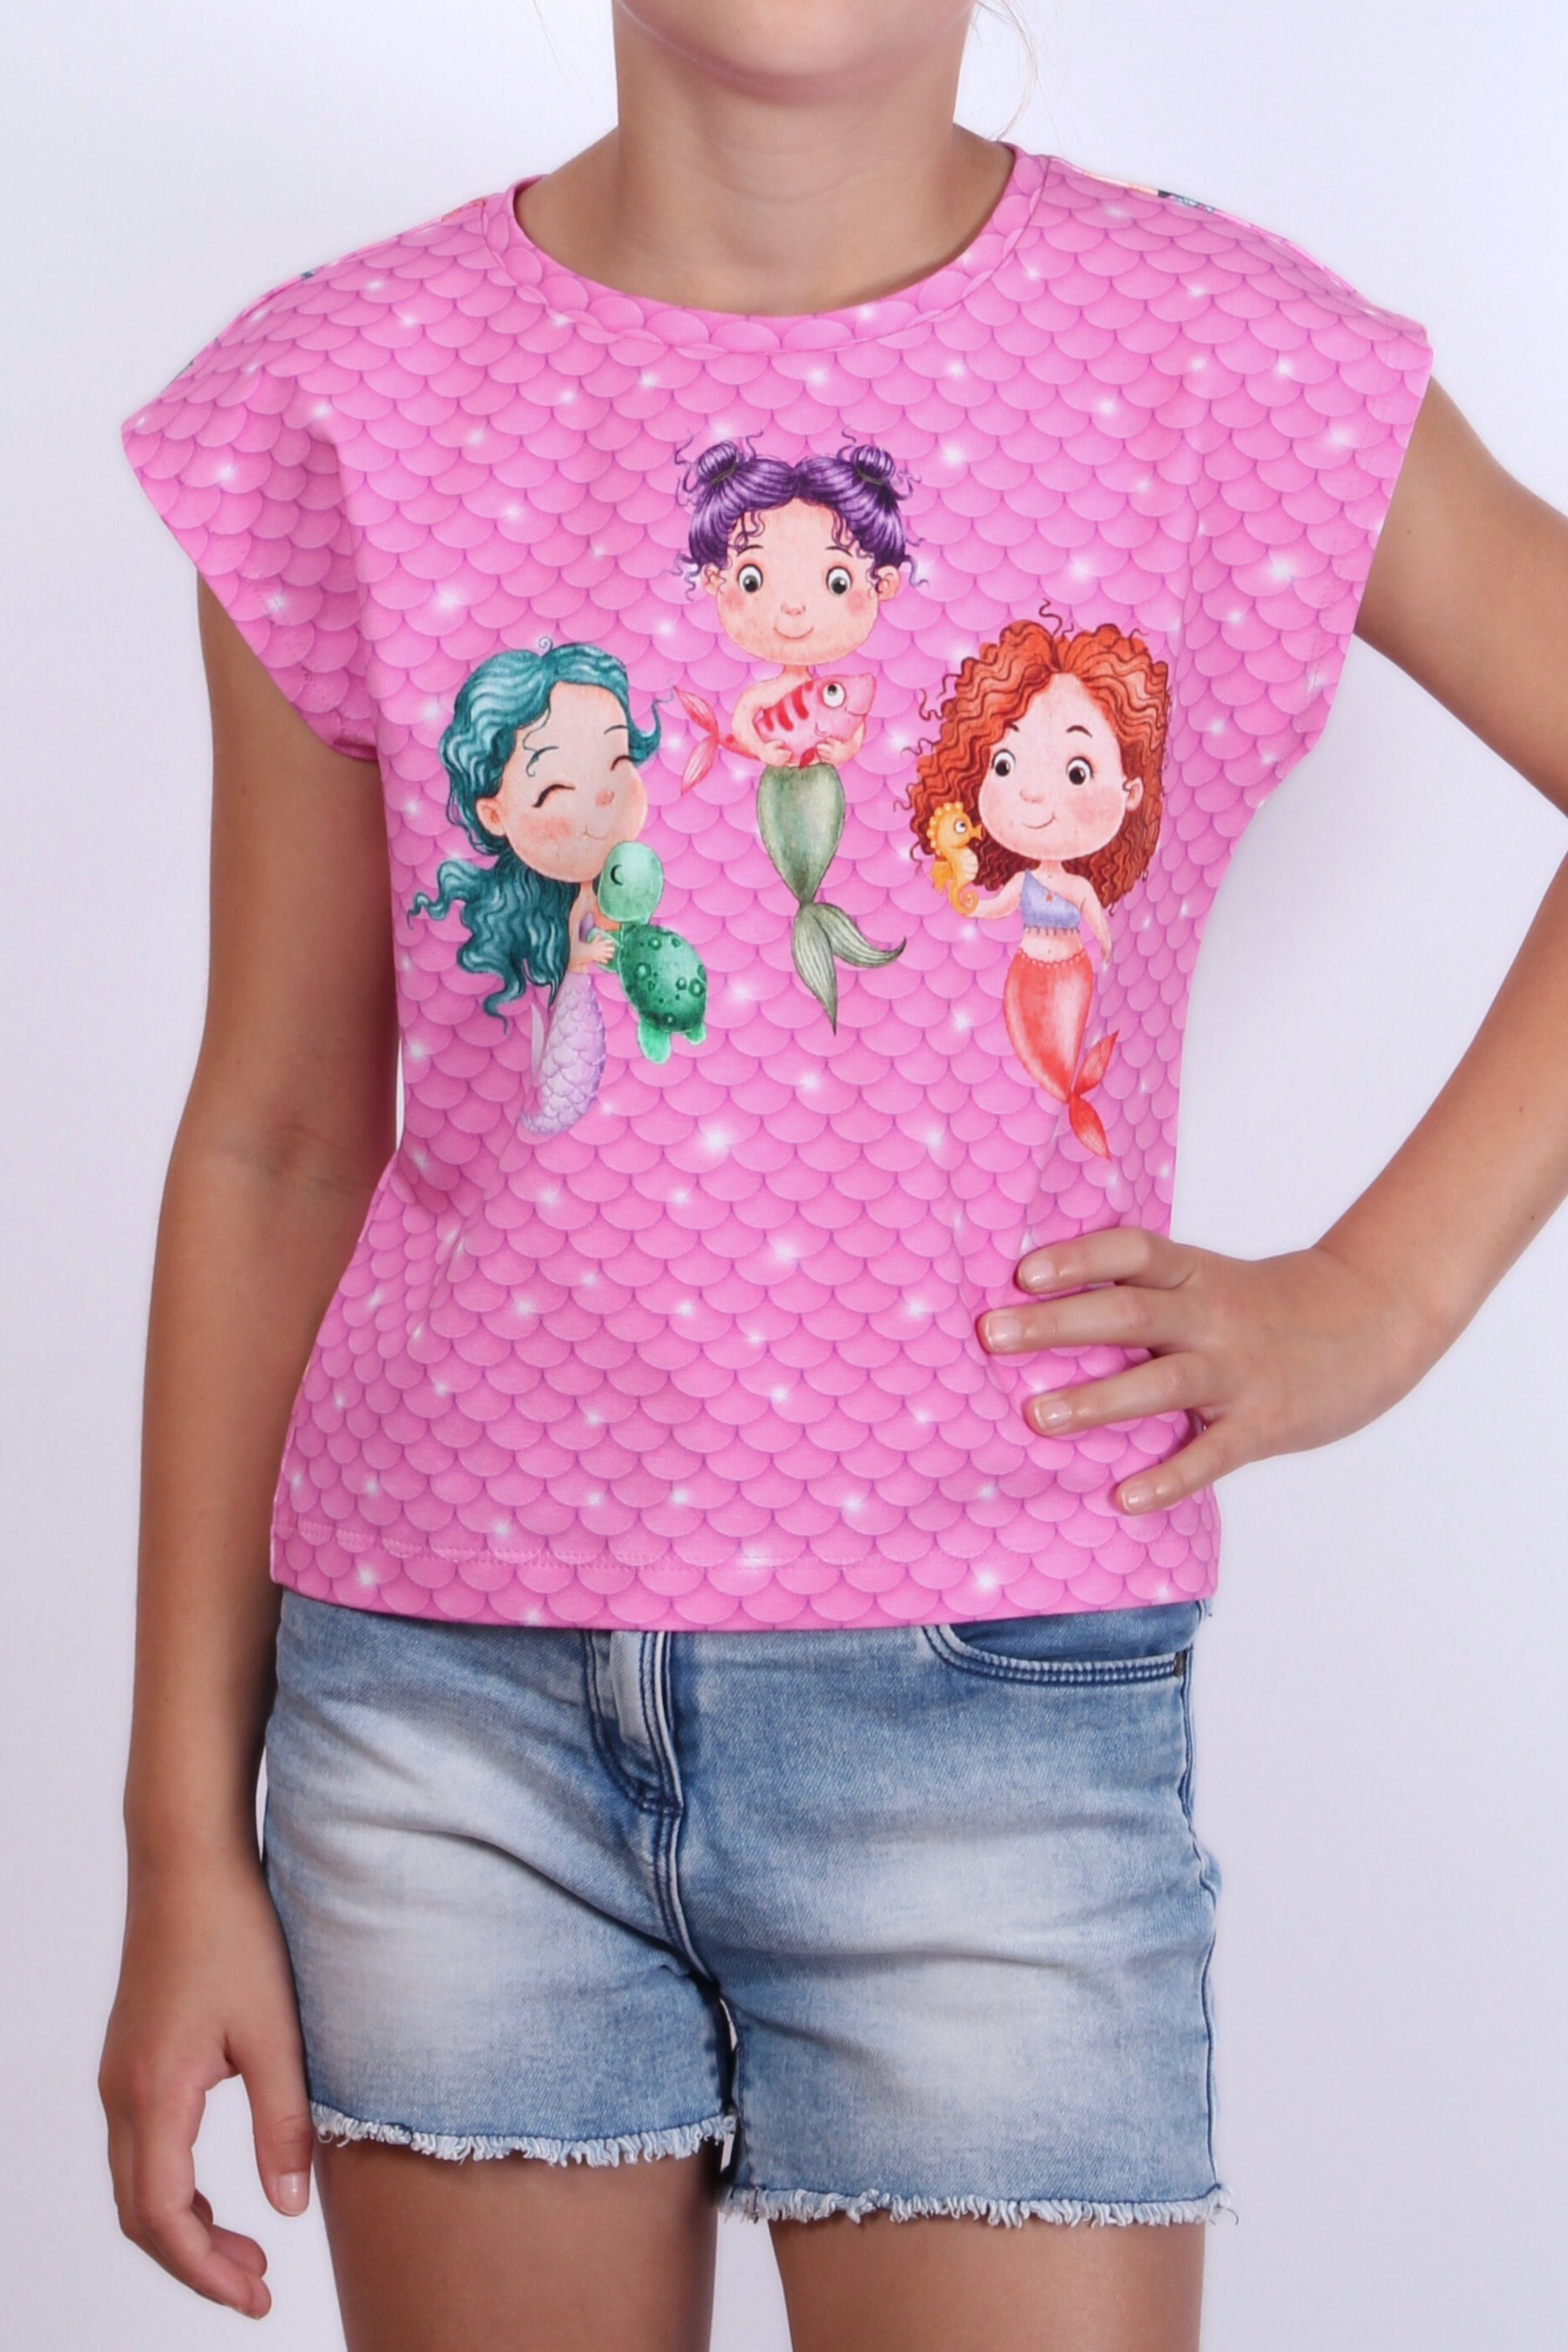 coolismo T-Shirt Print-Shirt für Mädchen Motiv Meerjungfrau Baumwolle, europäische Produktion